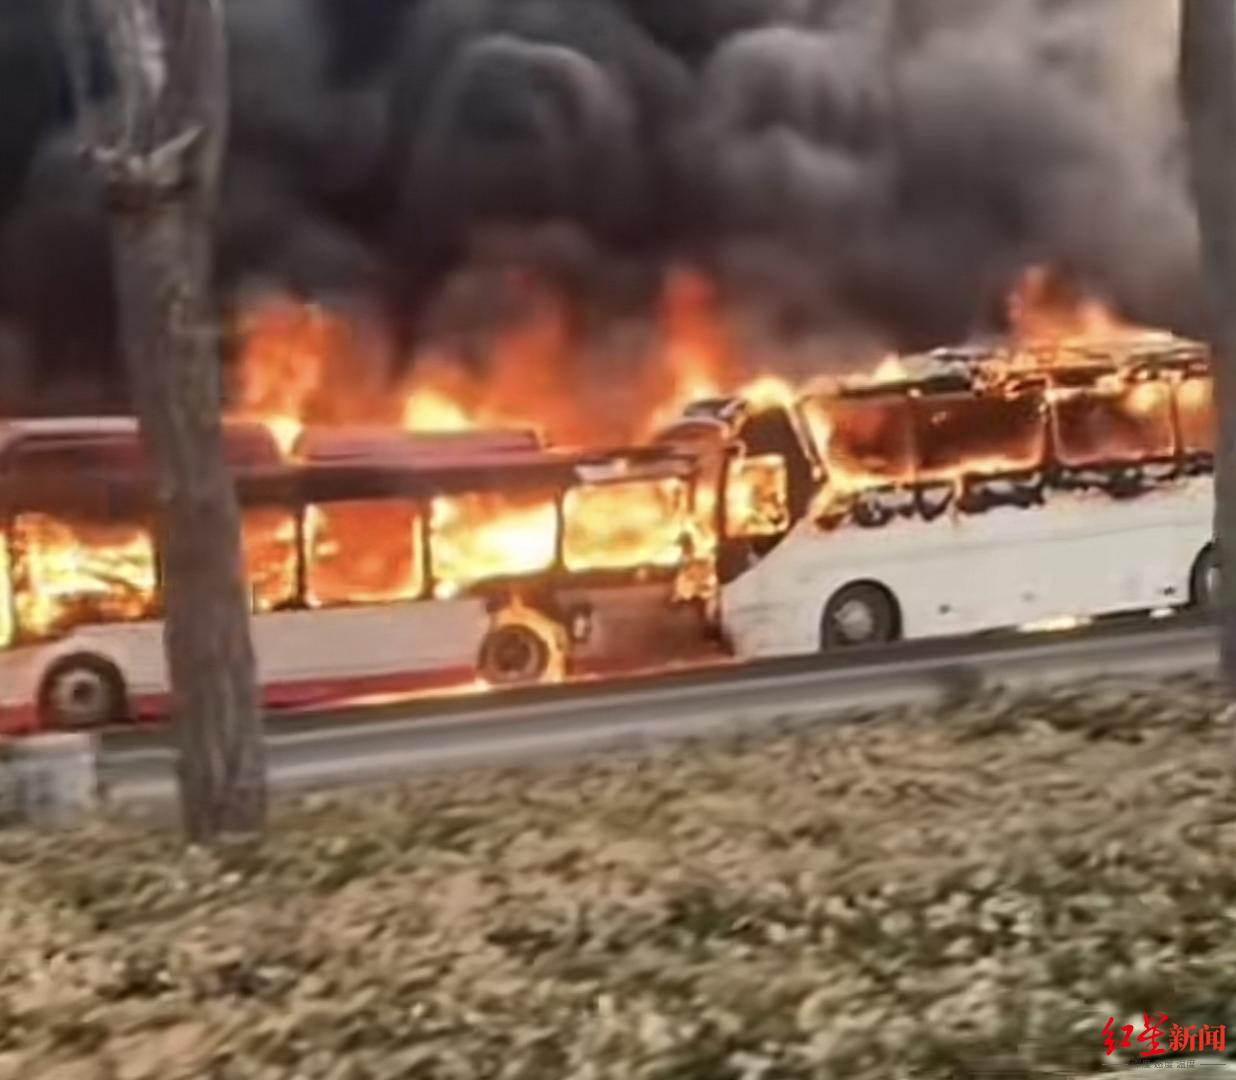 天津东丽区发生追尾事故致1死37轻伤当地宣传部大客车里有学生已第一